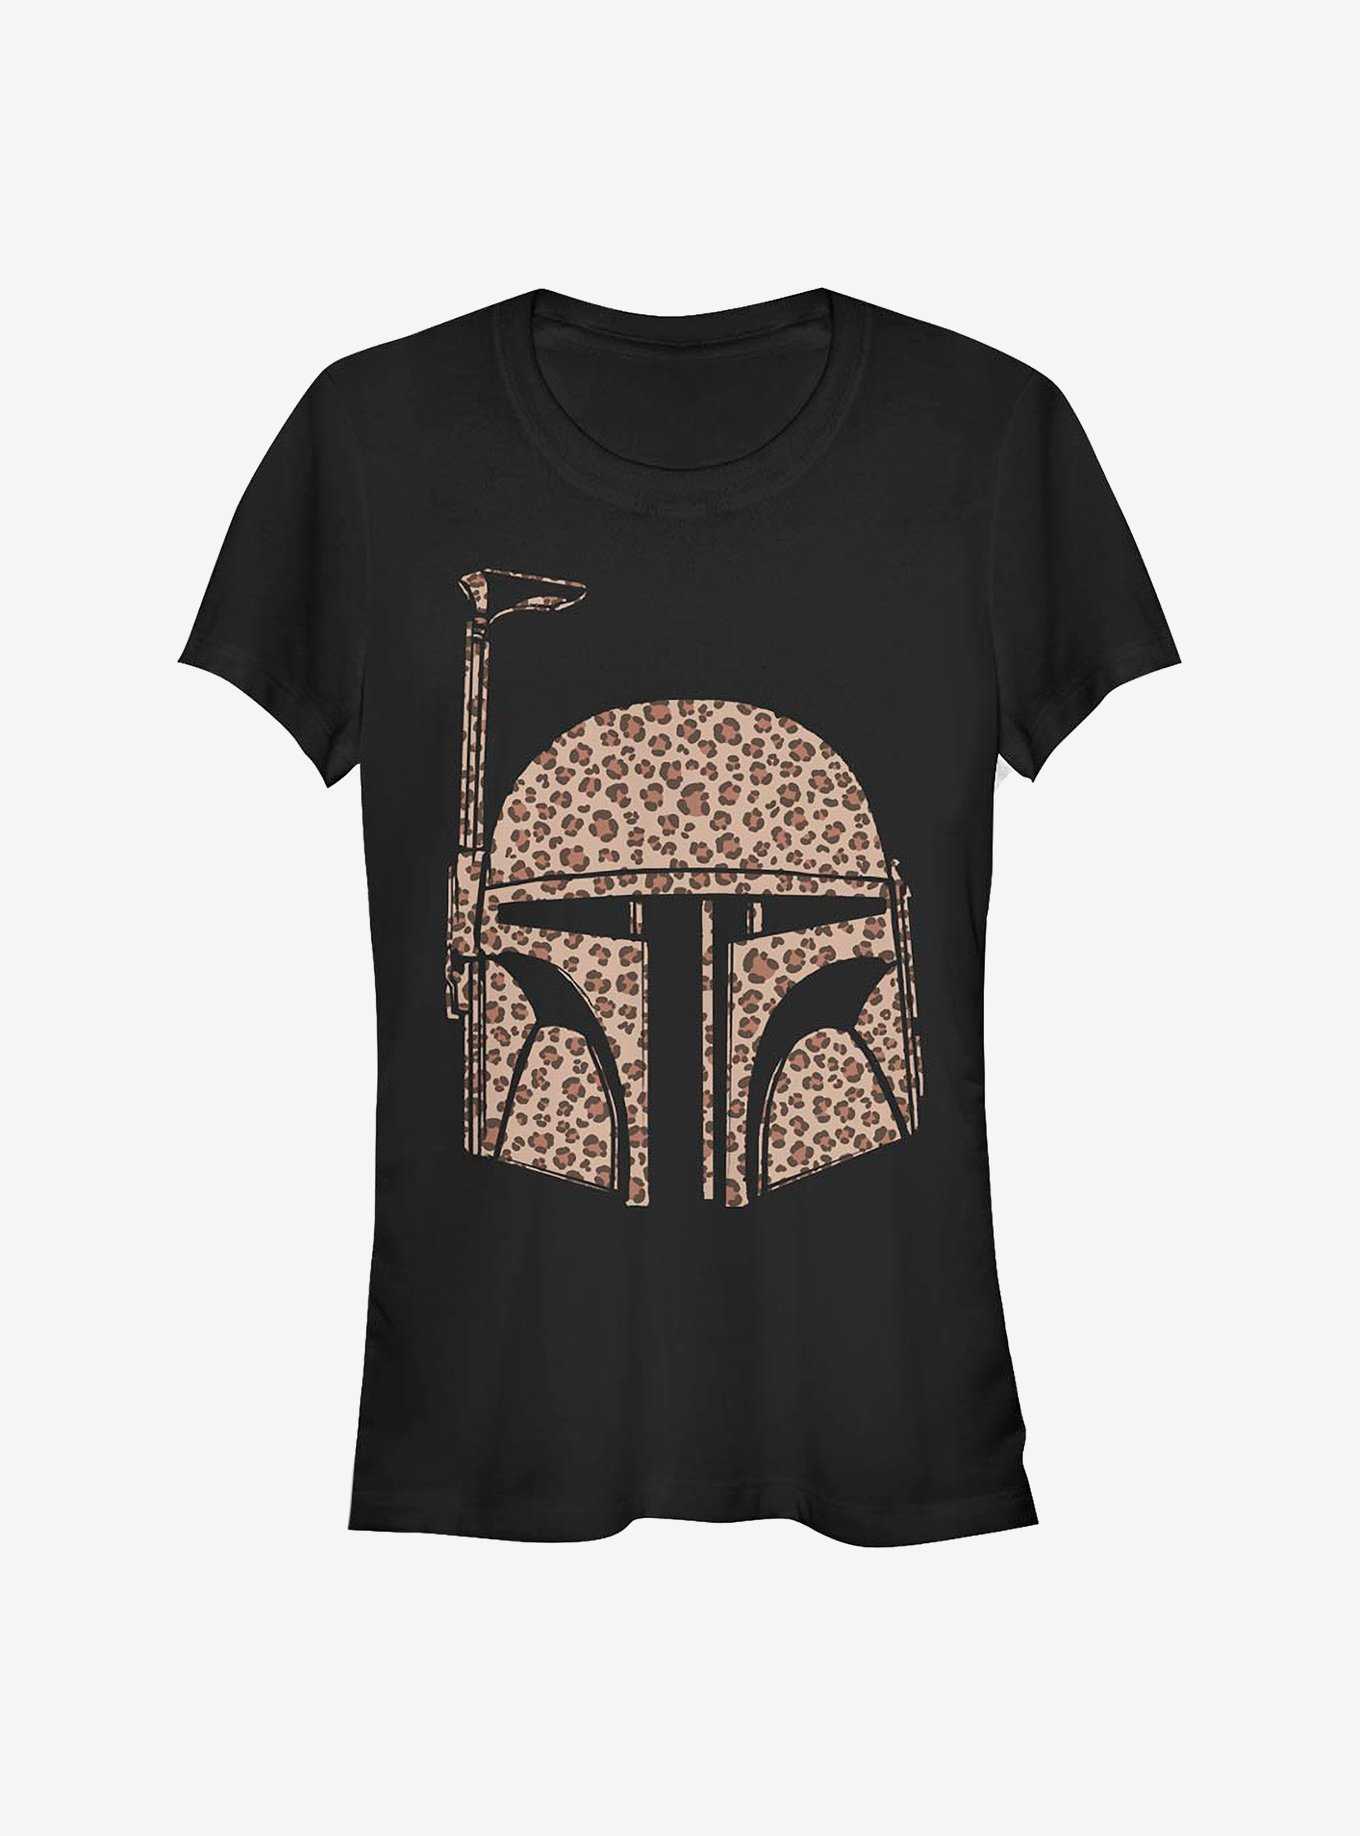 Star Wars Boba Fett Cheetah Girls T-Shirt, , hi-res